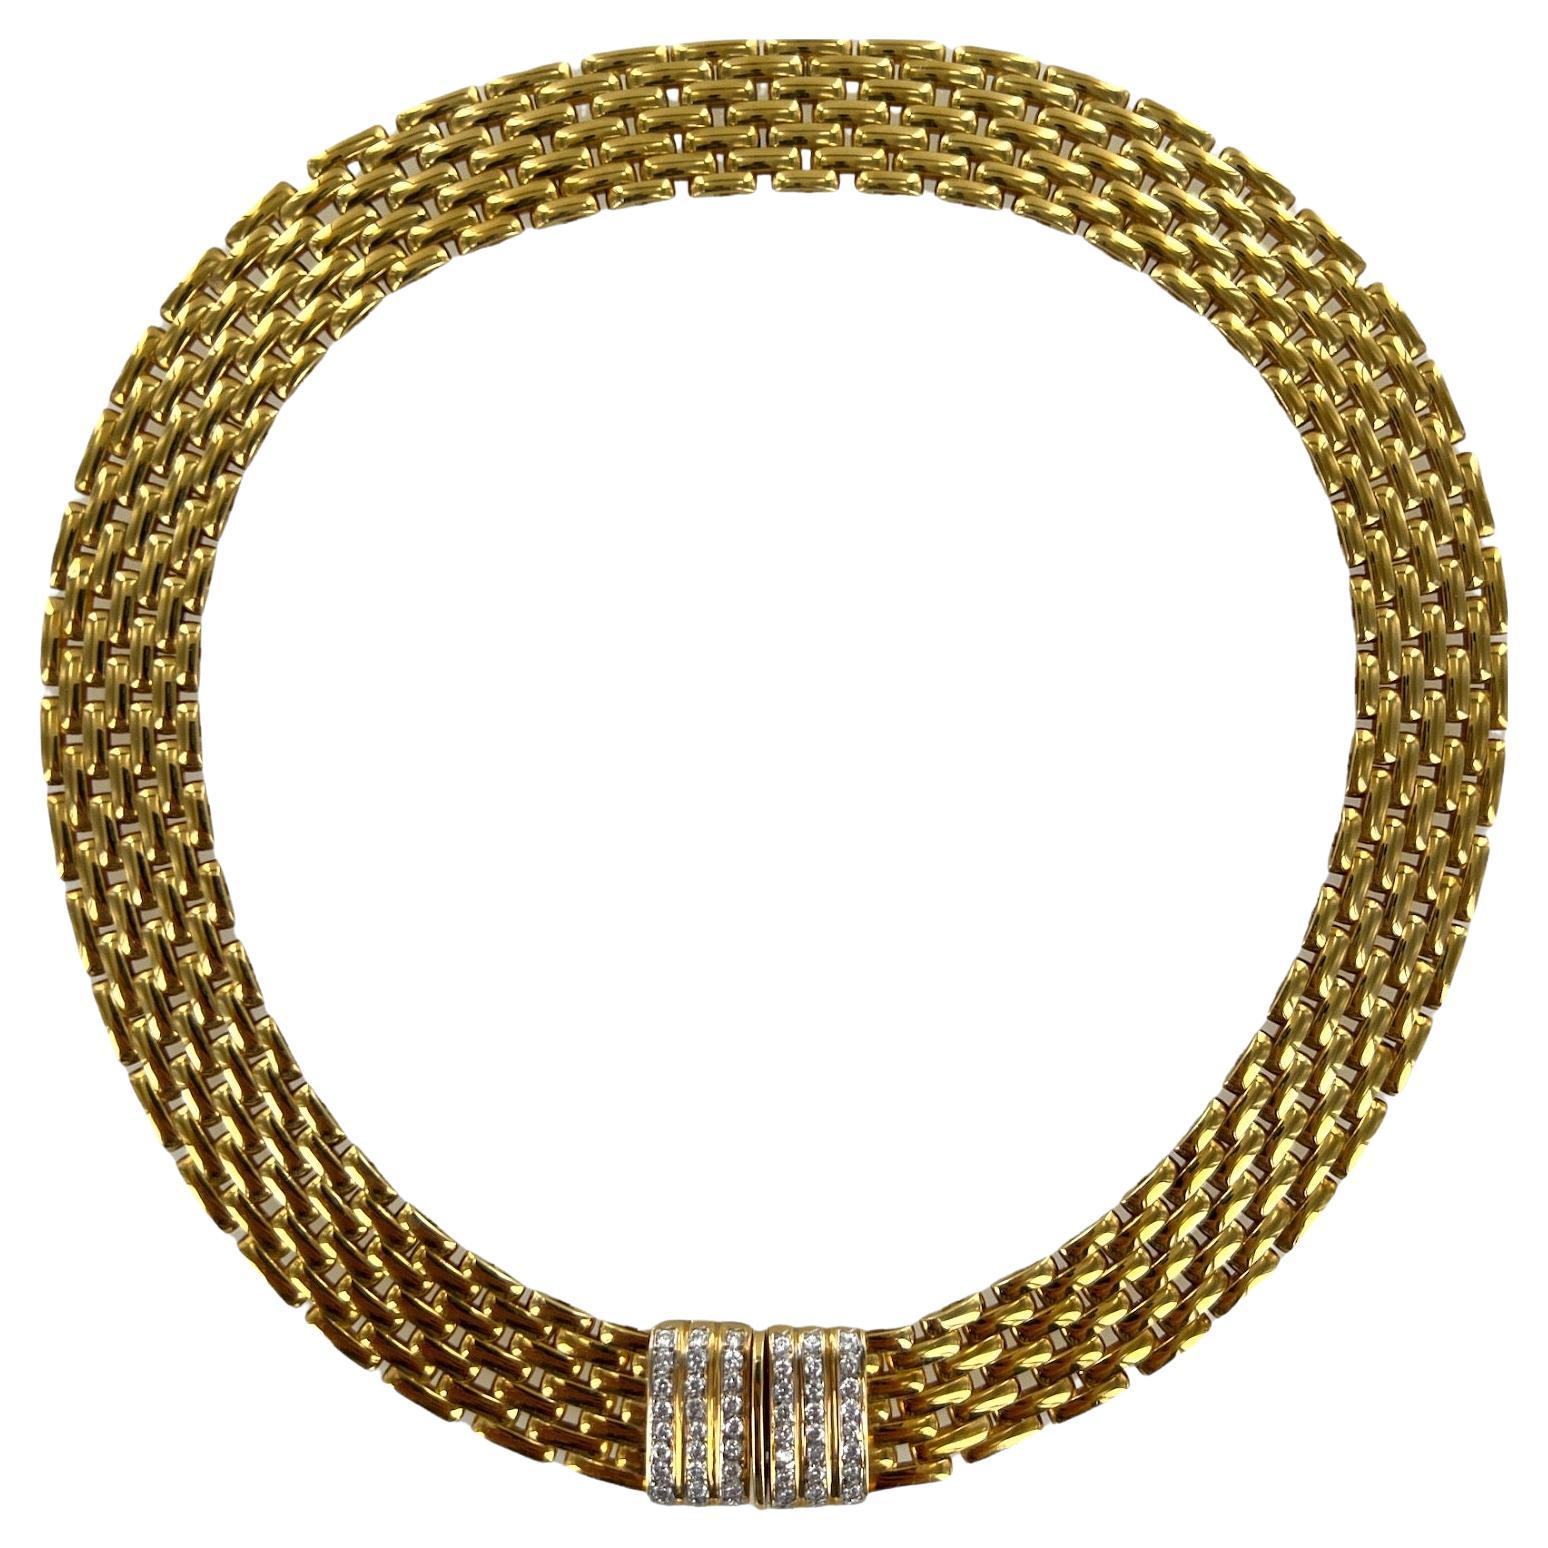 Italian 18 Karat Yellow Gold Diamond Panther Link 7 Row Choker Necklace